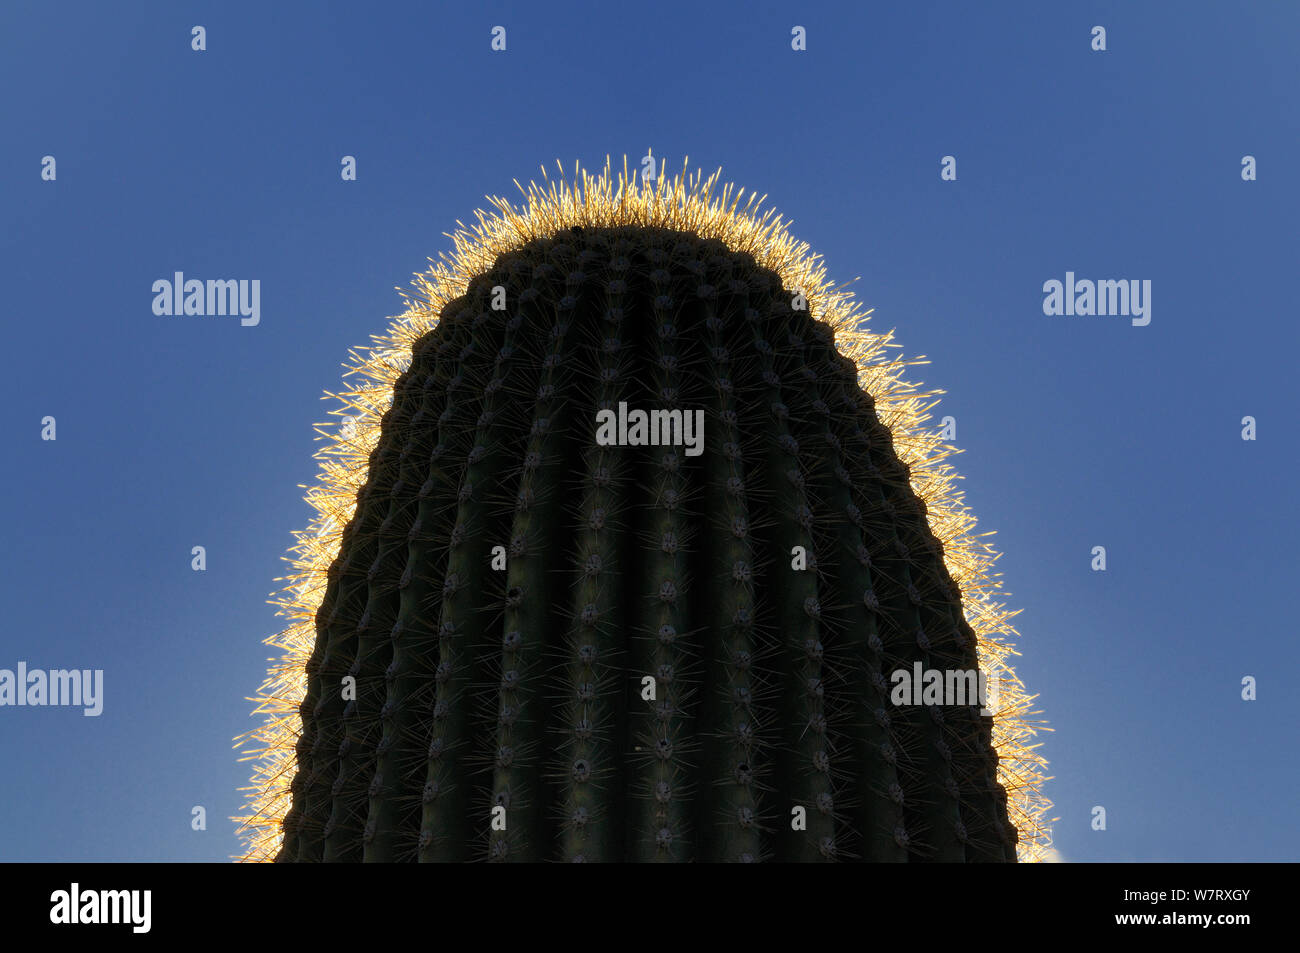 Haut de cactus Saguaro (Carnegiea gigantea) montrant rétroéclairé épines, Saguaro National Park, Arizona, USA, décembre 2012. Banque D'Images